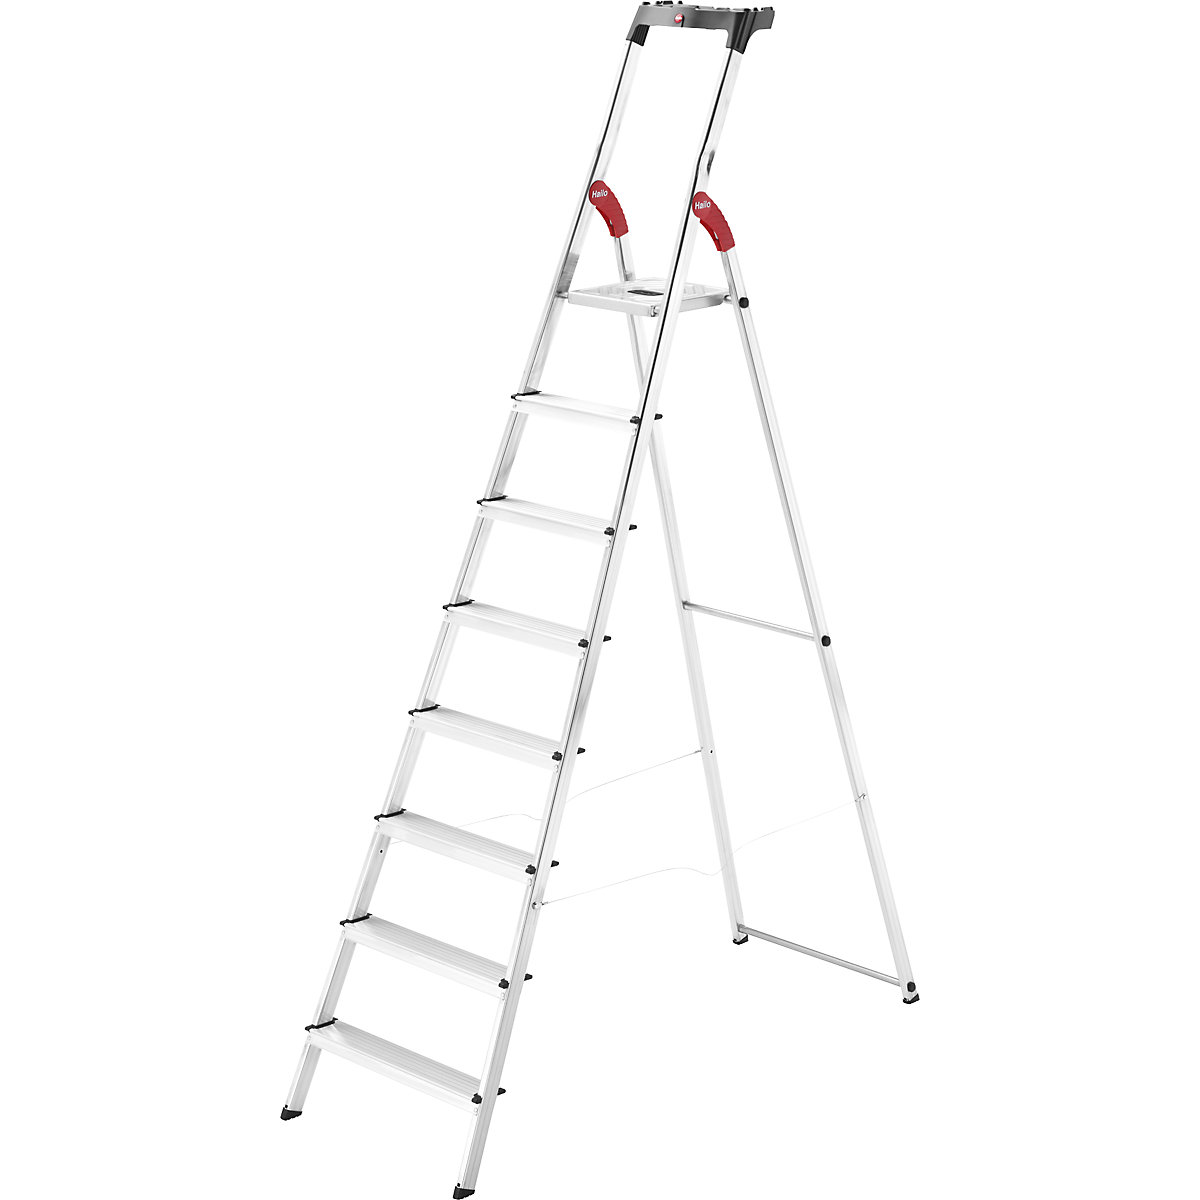 Hliníkový stojací rebrík so stupňami StandardLine L60 – Hailo, nosnosť 150 kg, 8 stupňov-7